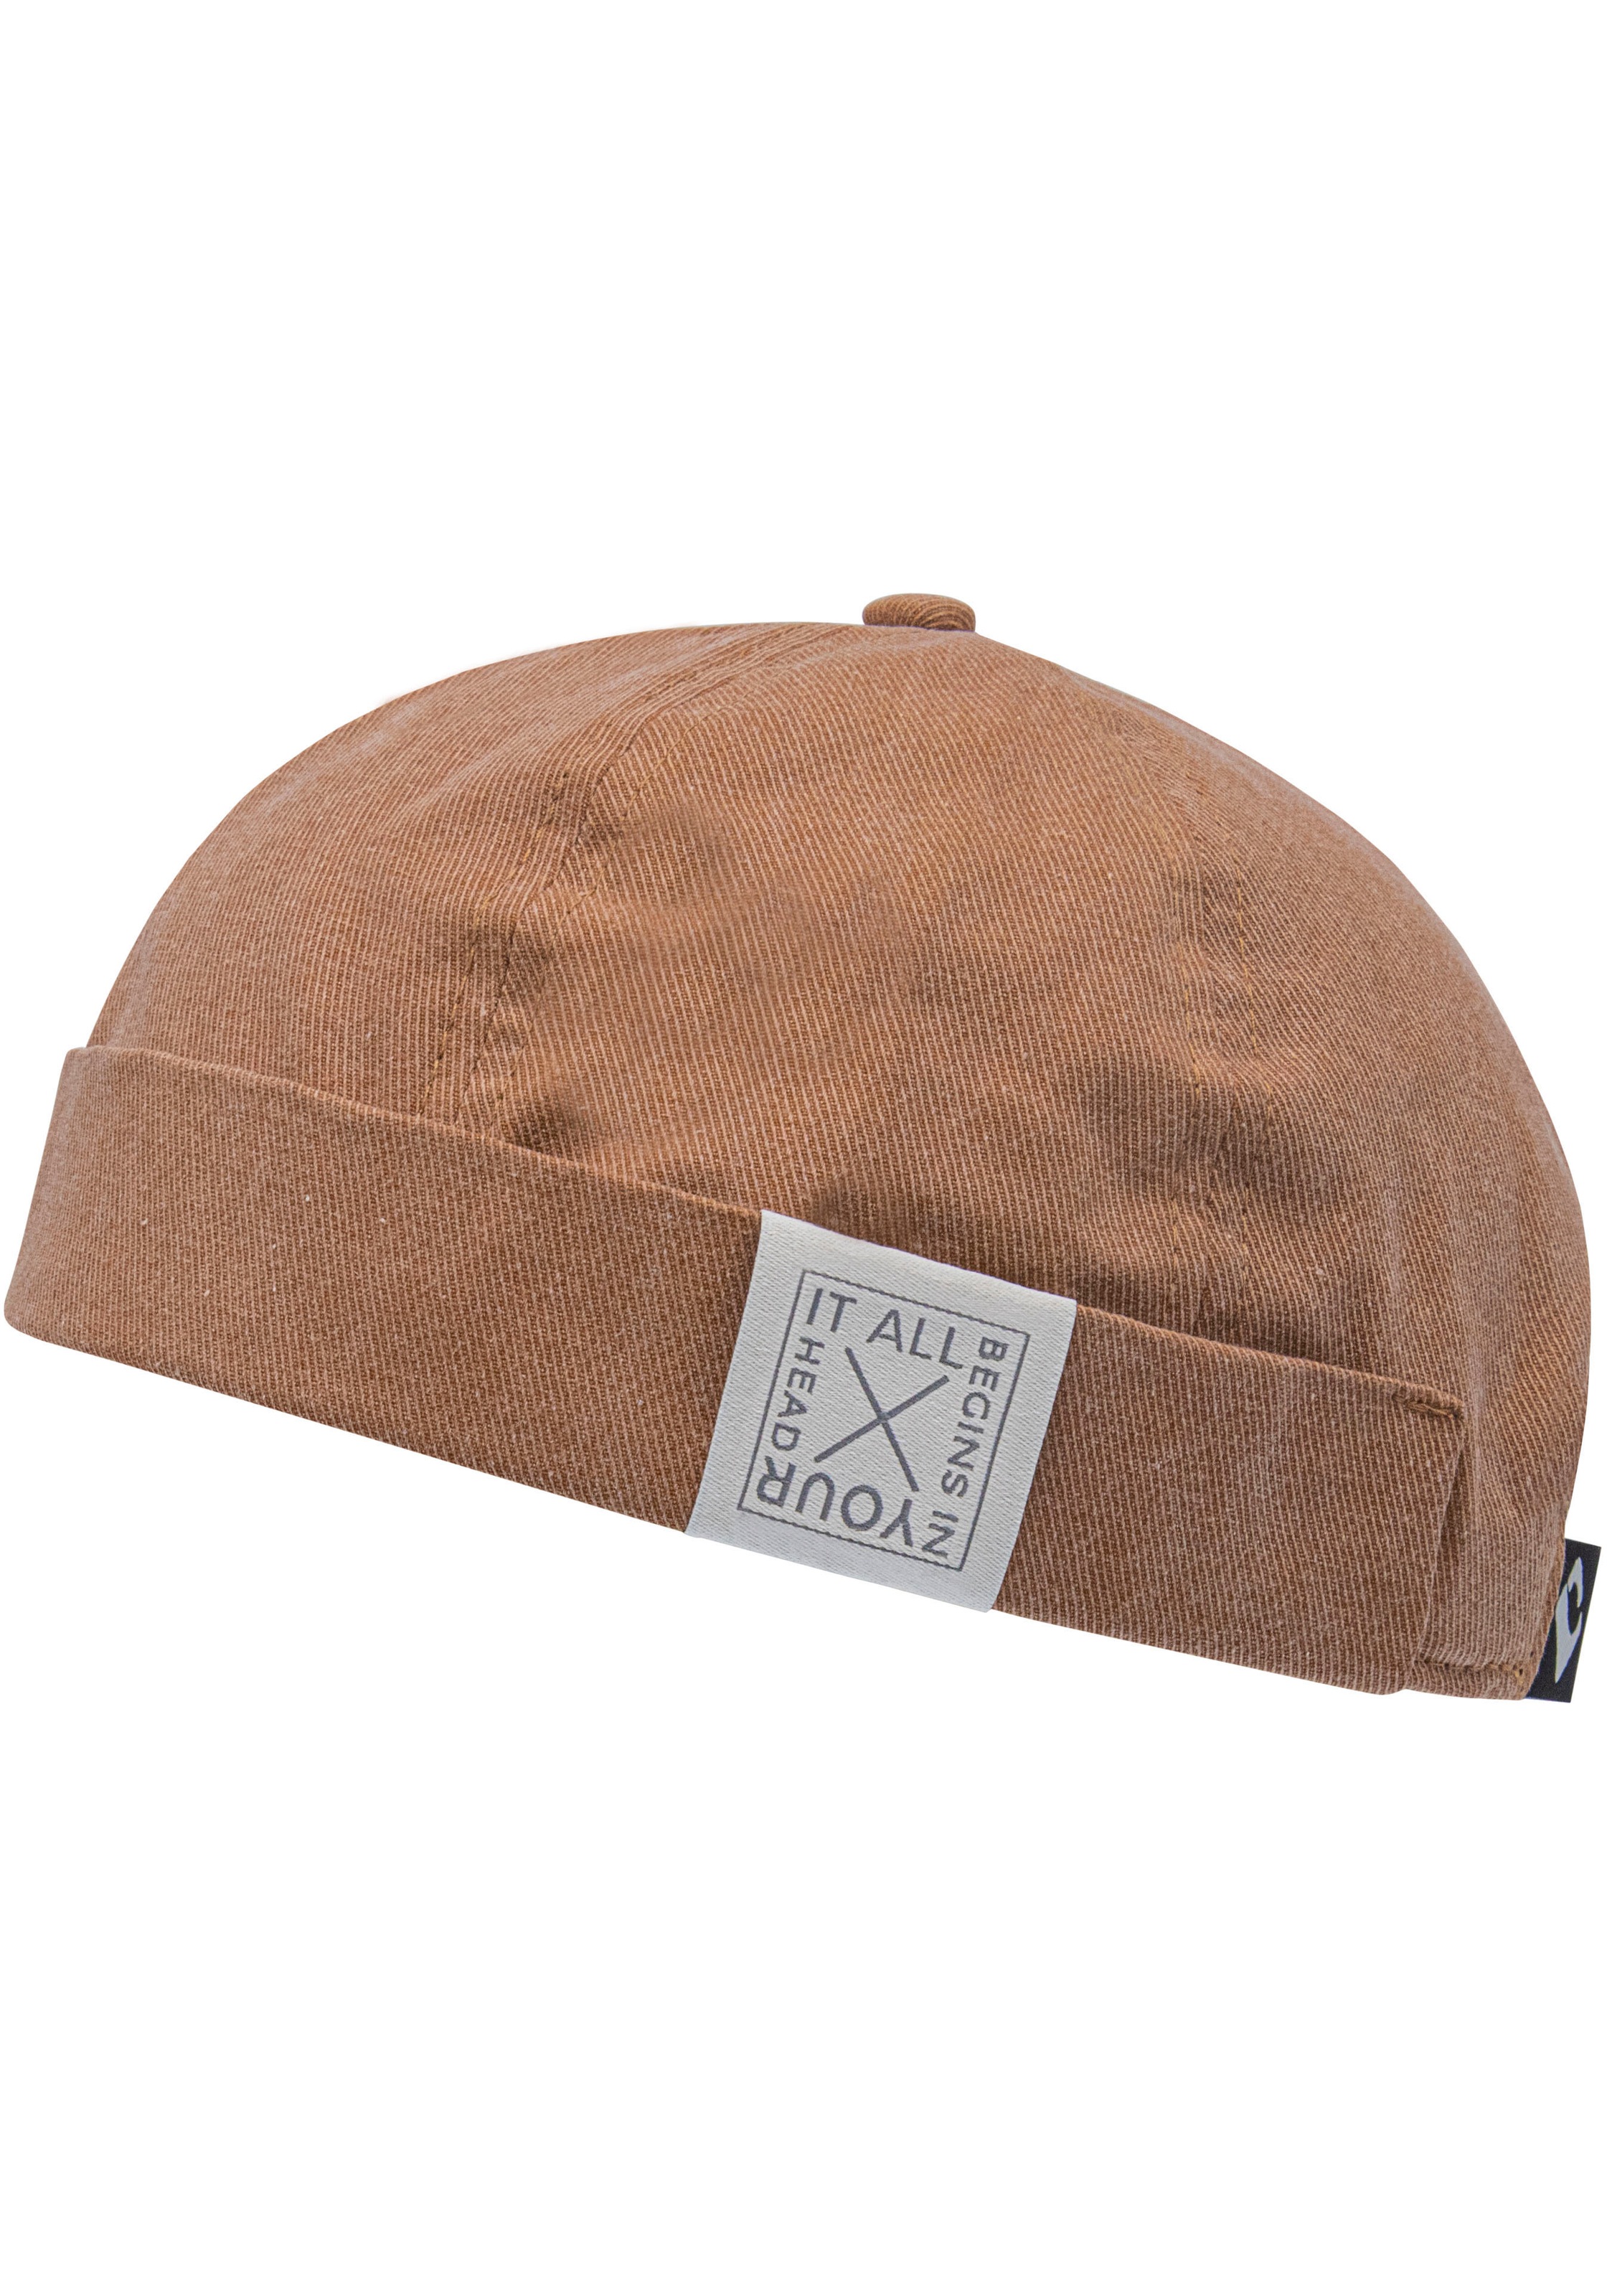 chillouts Flat Cap Baumwolle, Vintage-Look Reine »Yao OTTO online bei | kaufen OTTO Hat«